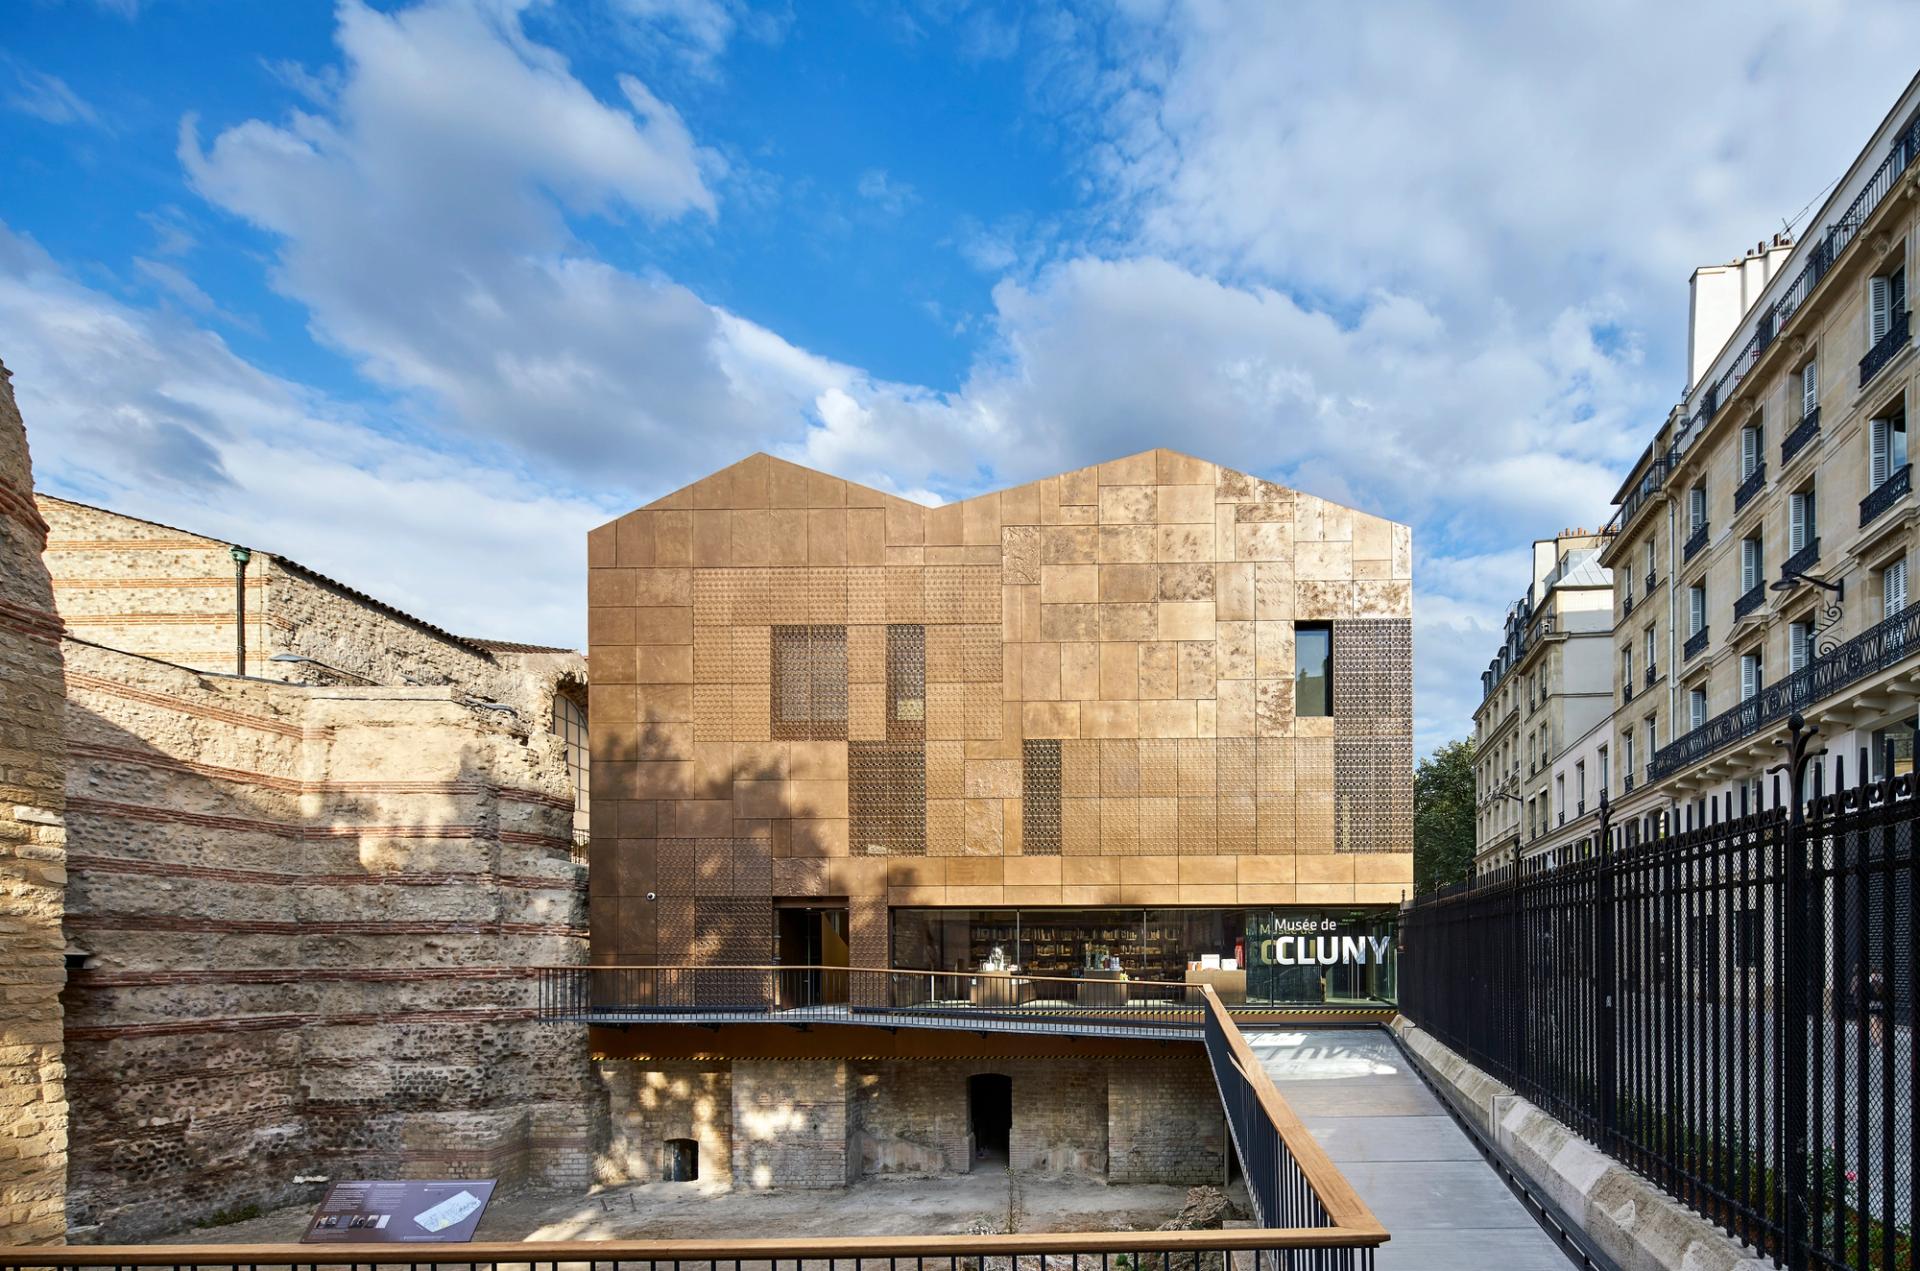 Le nouveau bâtiment d’accueil du Musée de Cluny, façade ouest, Bernard Desmoulin, architecte. © Michel Denancé/Musée de Cluny – Musée national du Moyen Âge